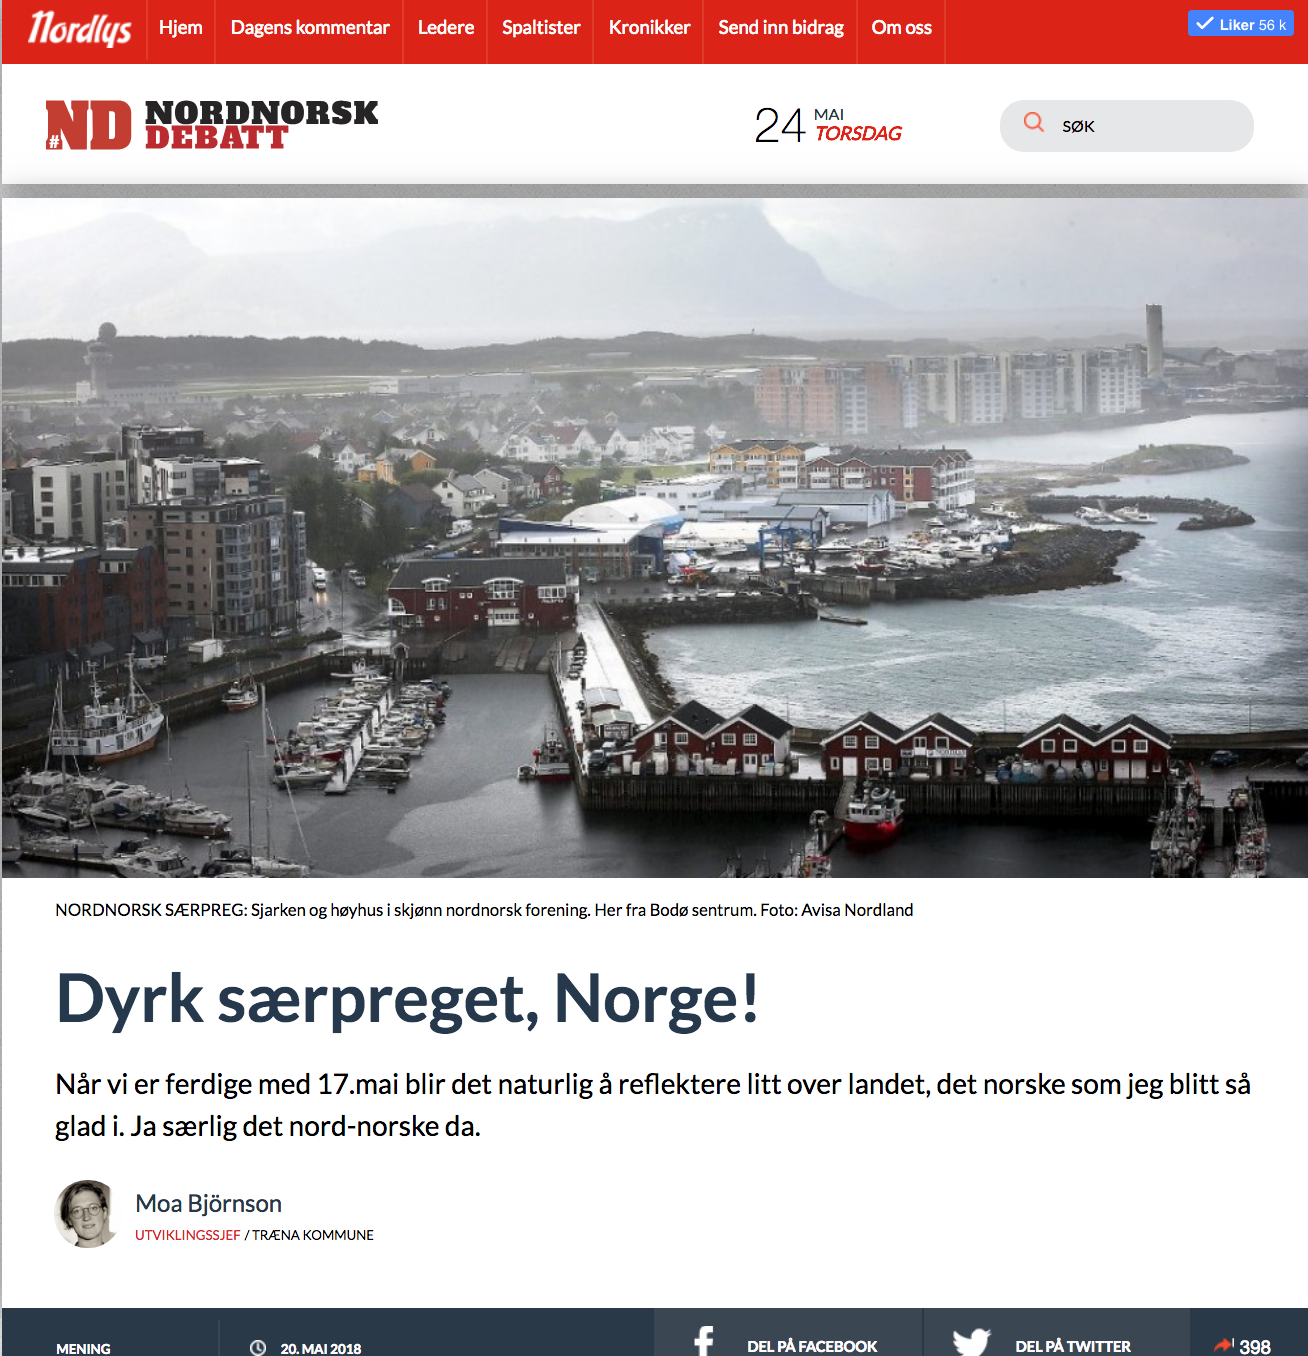 Dyrk Særpreget Norge! / Renodla säregenheten! - Urbanisten